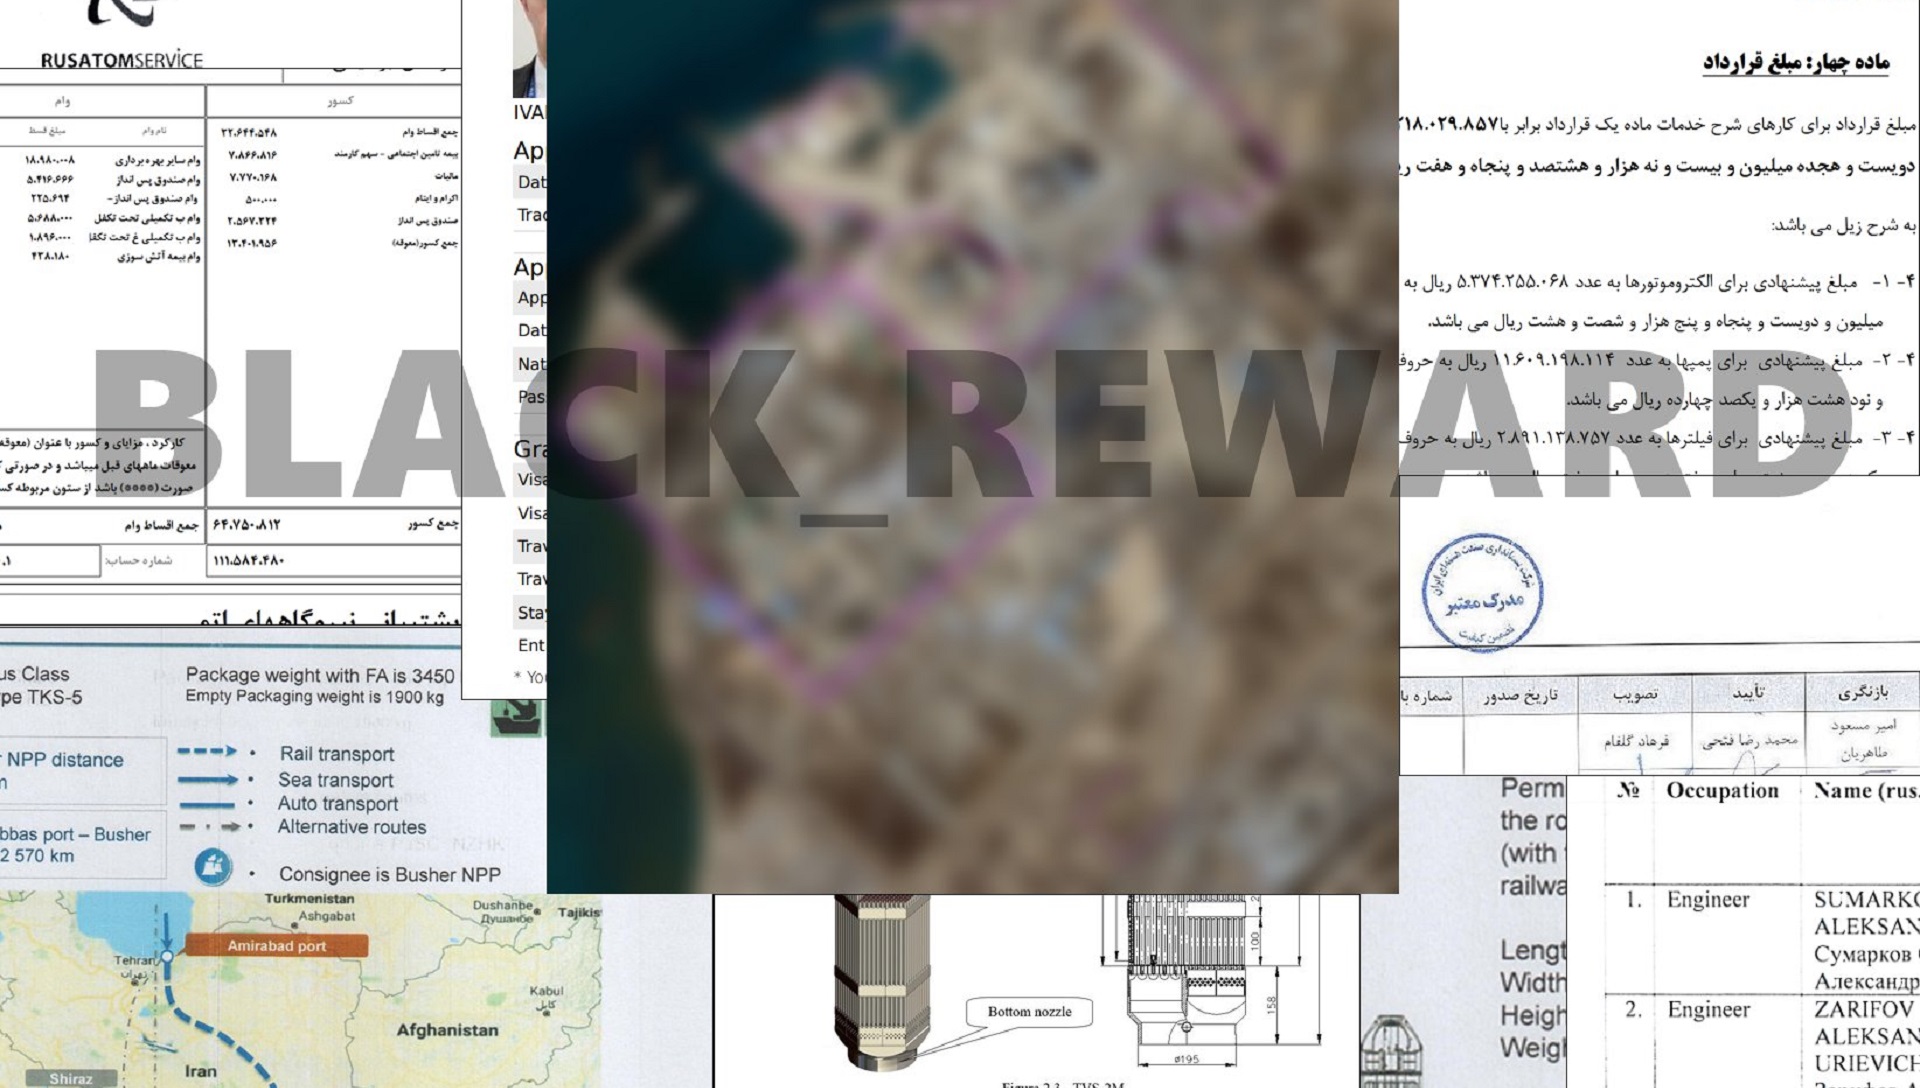 Archivos de la agencia nuclear de Irán divulgados por el grupo Black Reward